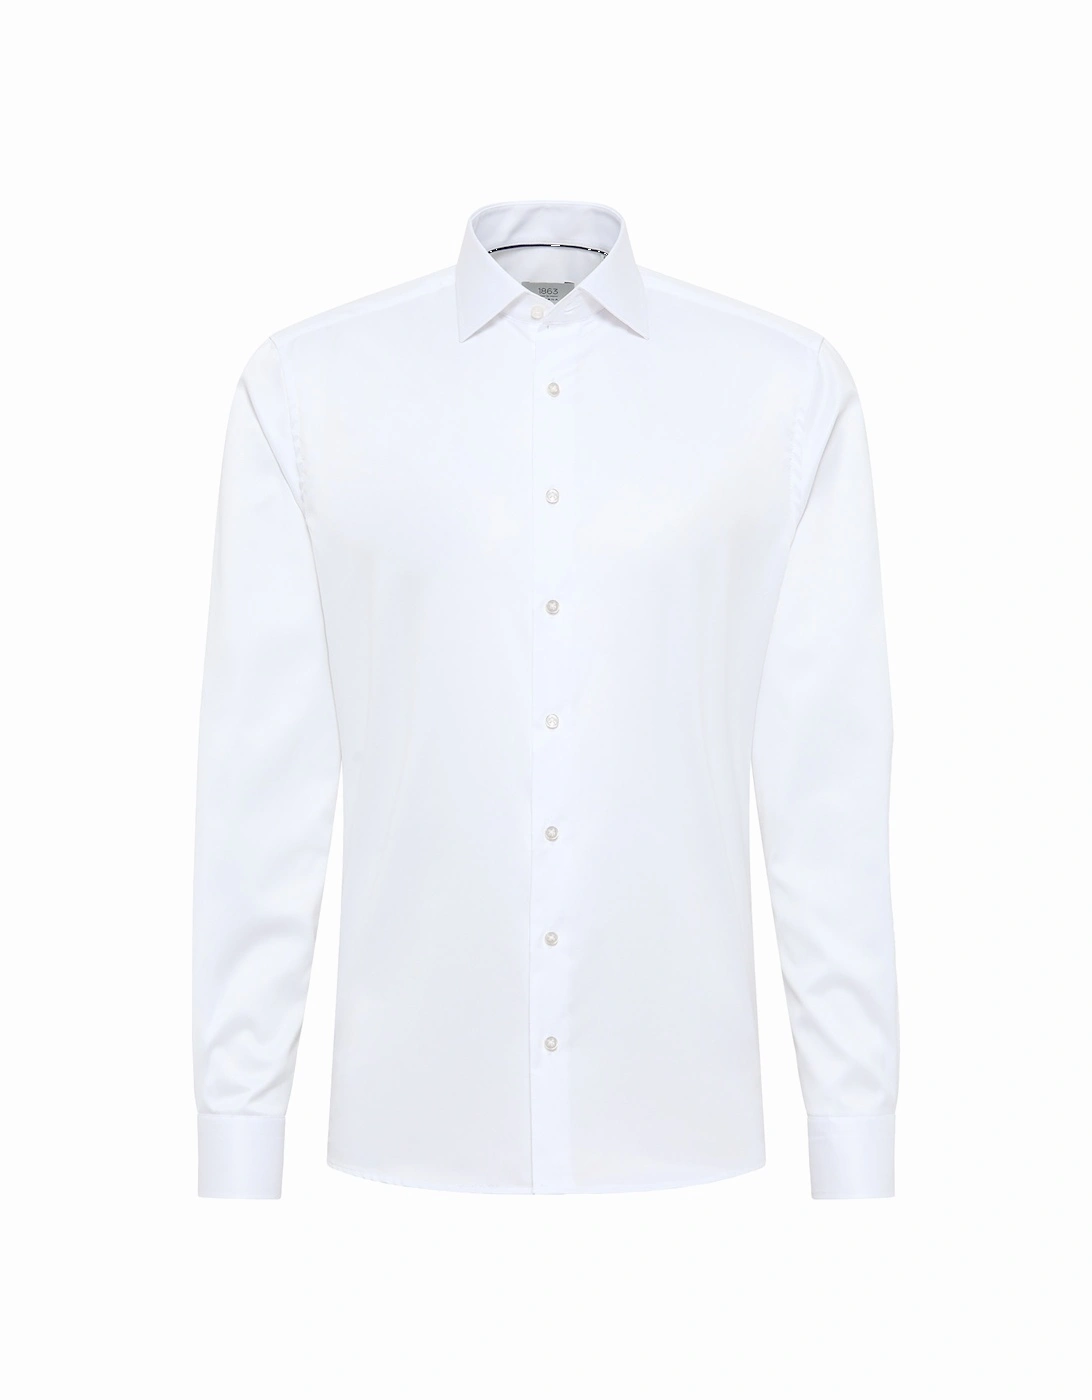 Mens 8005 Luxury Shirt (White), 7 of 6